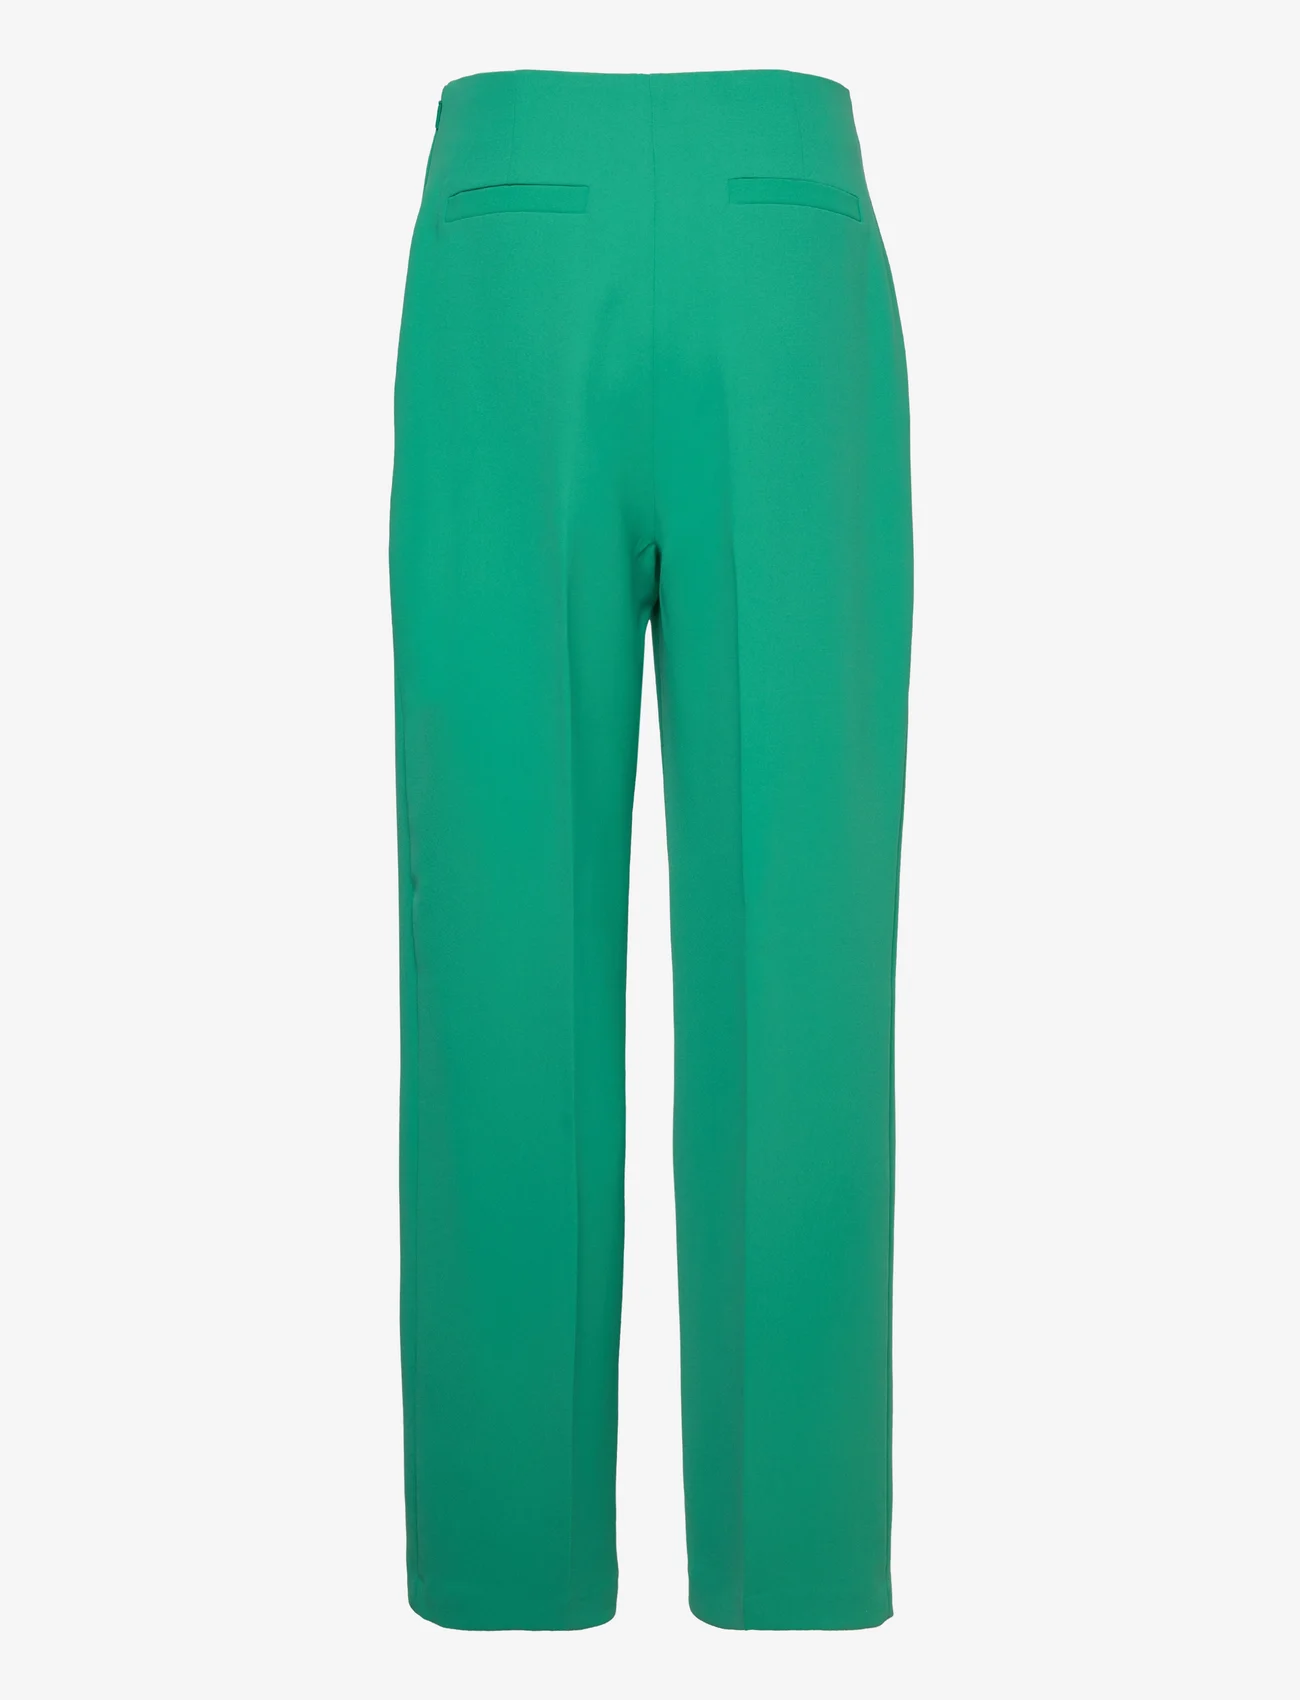 Ted Baker London - LLAYLAT - bukser med brede ben - 34 green - 1